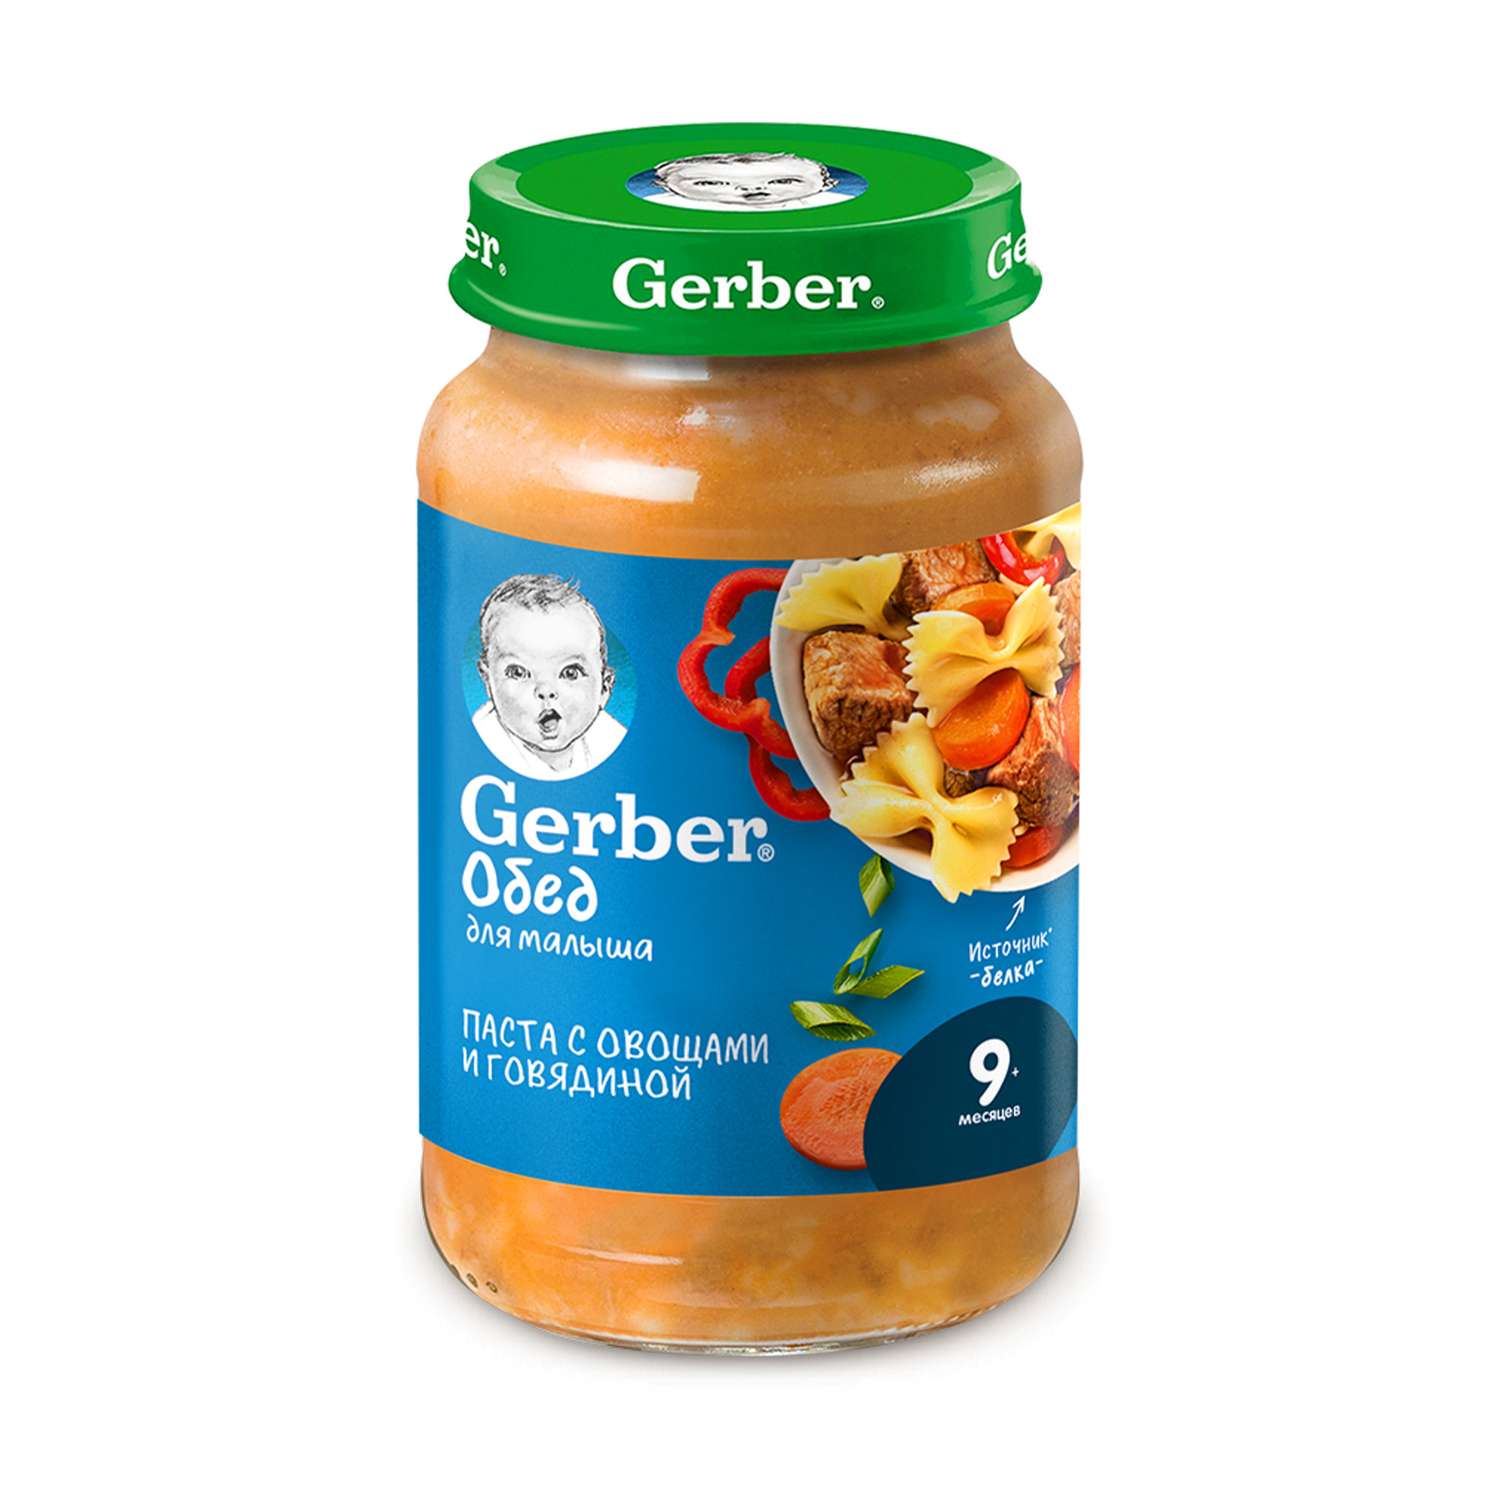 Пюре Gerber паста-овощи-говядина 190г с 9месяцев - фото 2